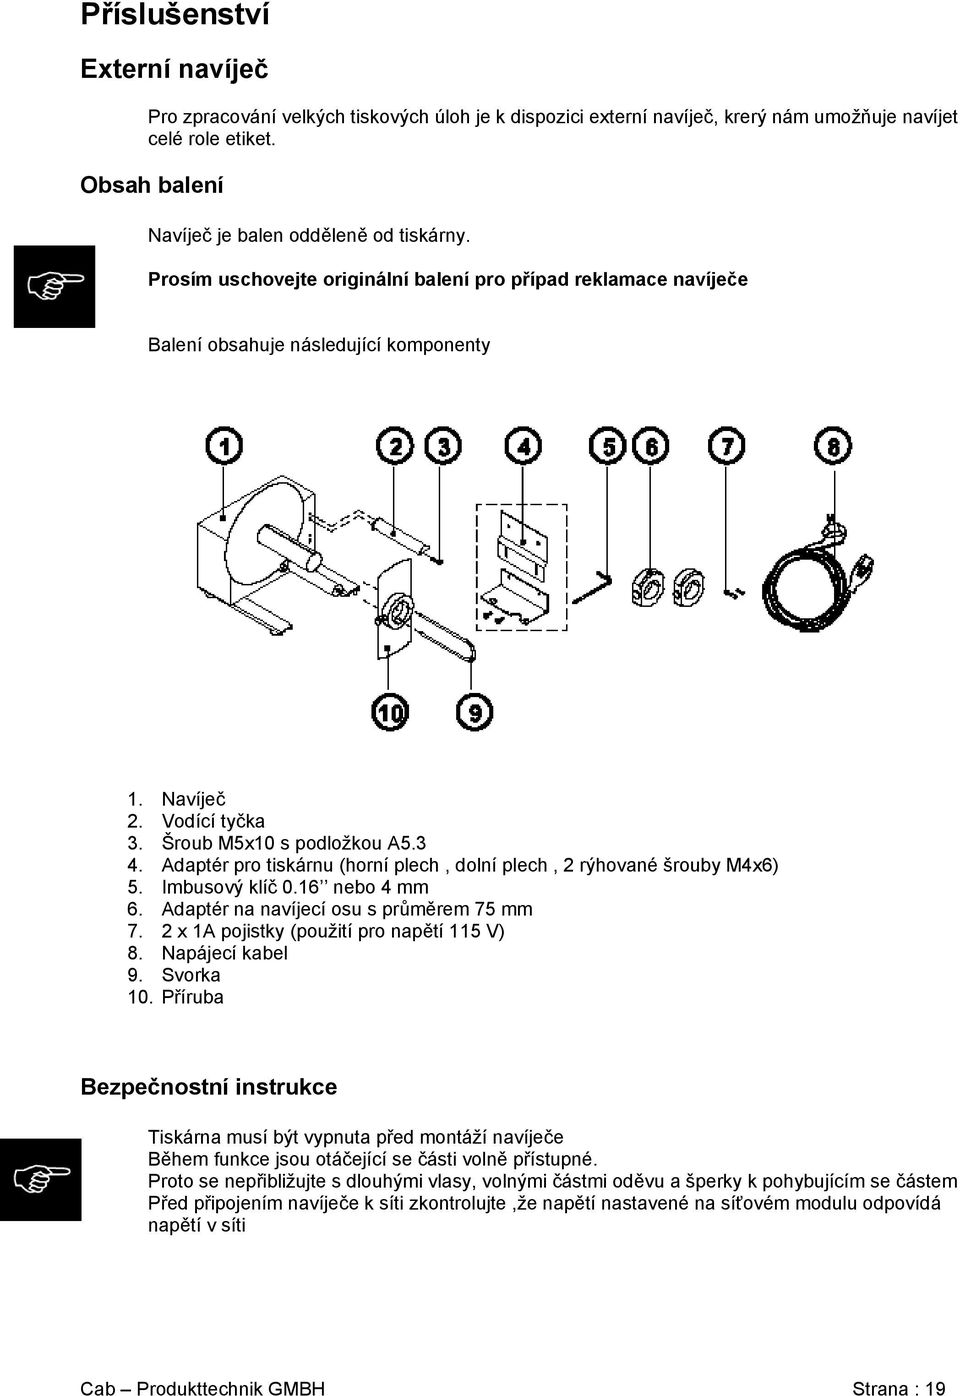 Adaptér pro tiskárnu (horní plech, dolní plech, 2 rýhované šrouby M4x6) 5. Imbusový klíč 0.16 nebo 4 mm 6. Adaptér na navíjecí osu s průměrem 75 mm 7. 2 x 1A pojistky (použití pro napětí 115 V) 8.